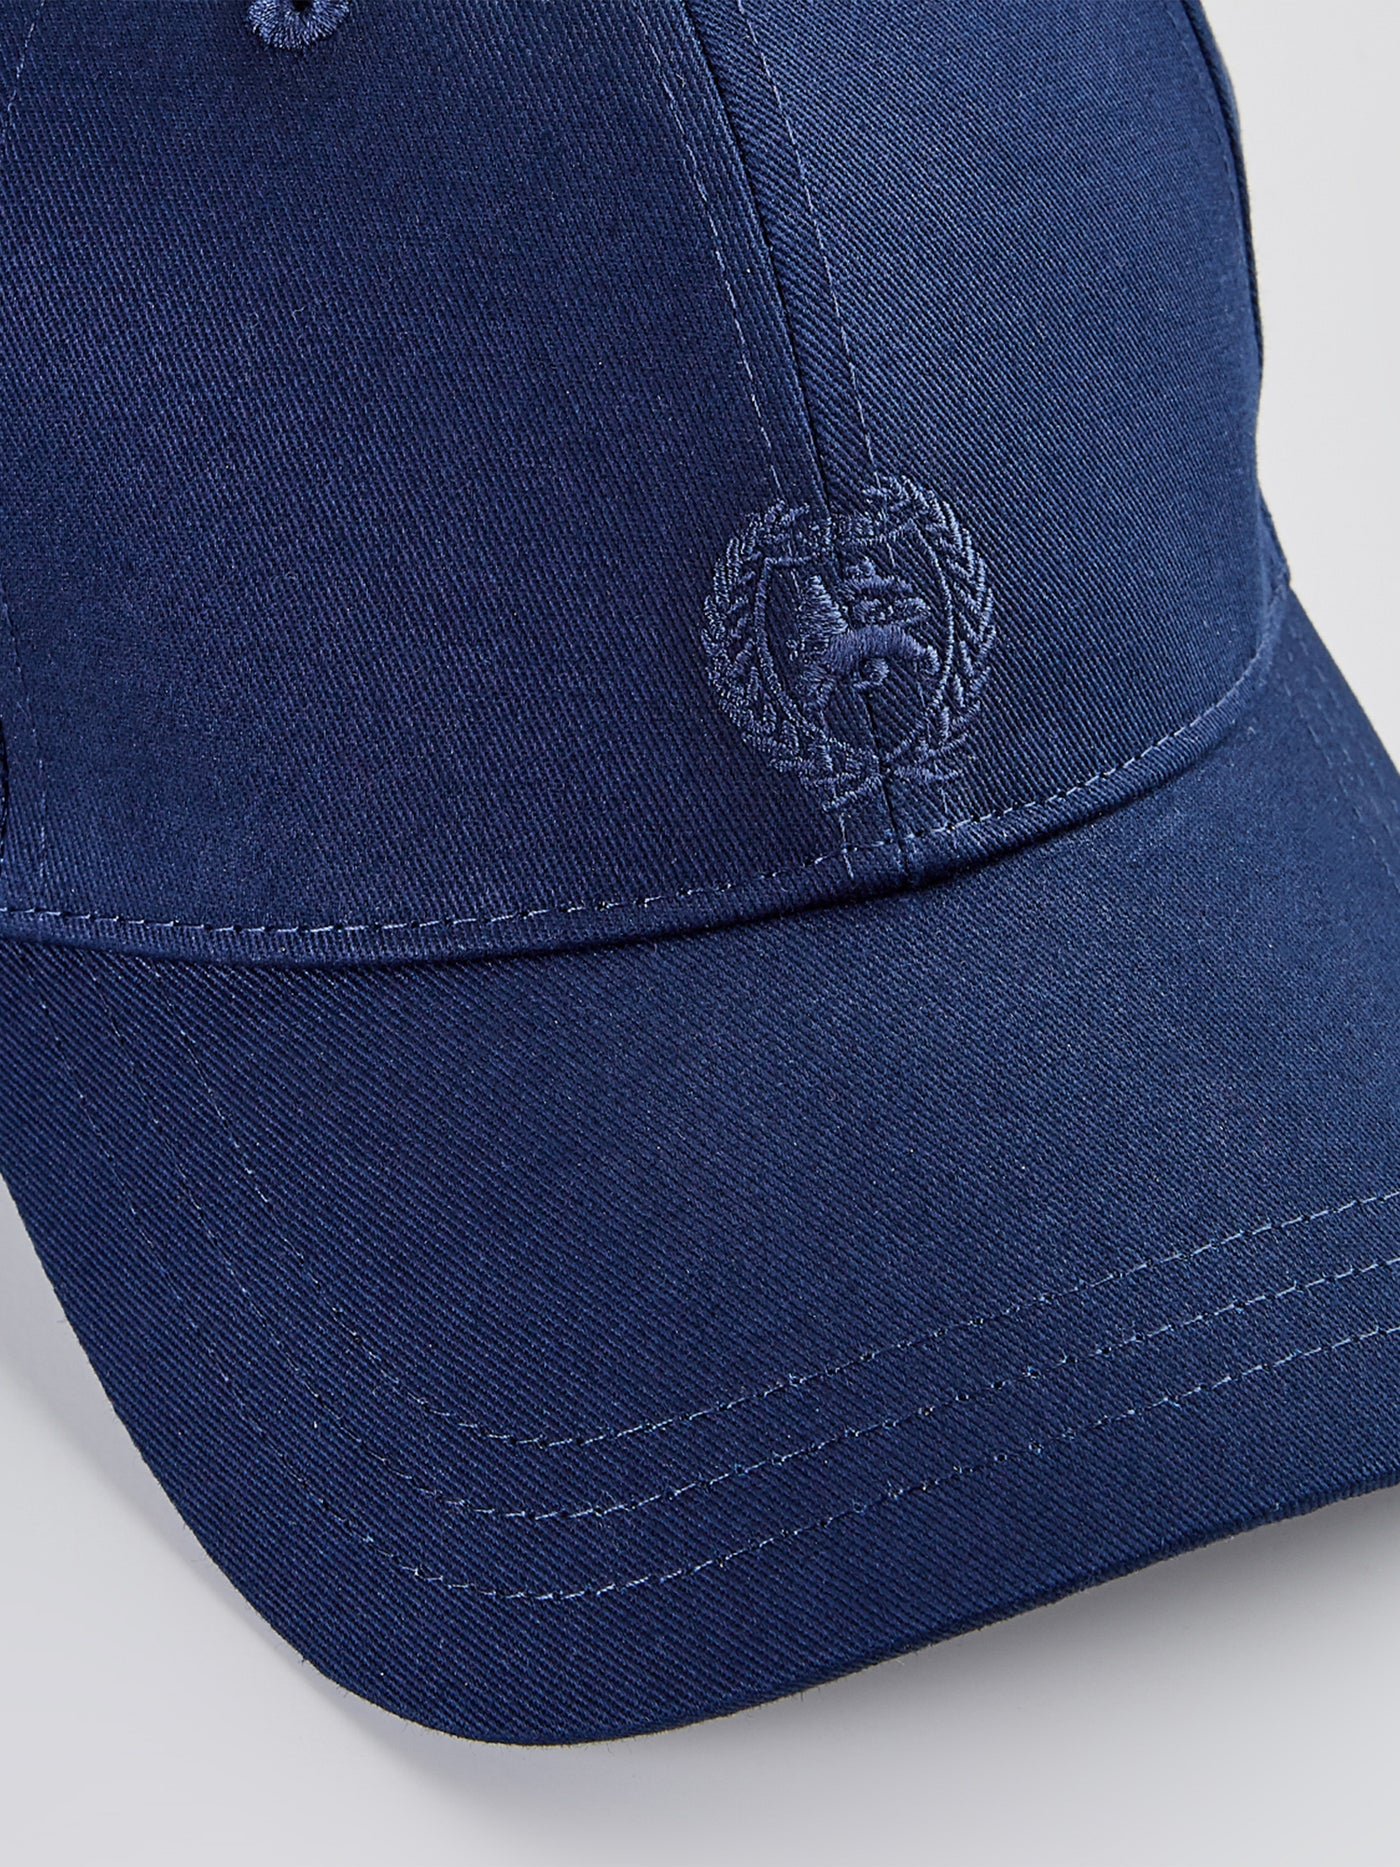 LERROS cap logo with Baseball SHOP –